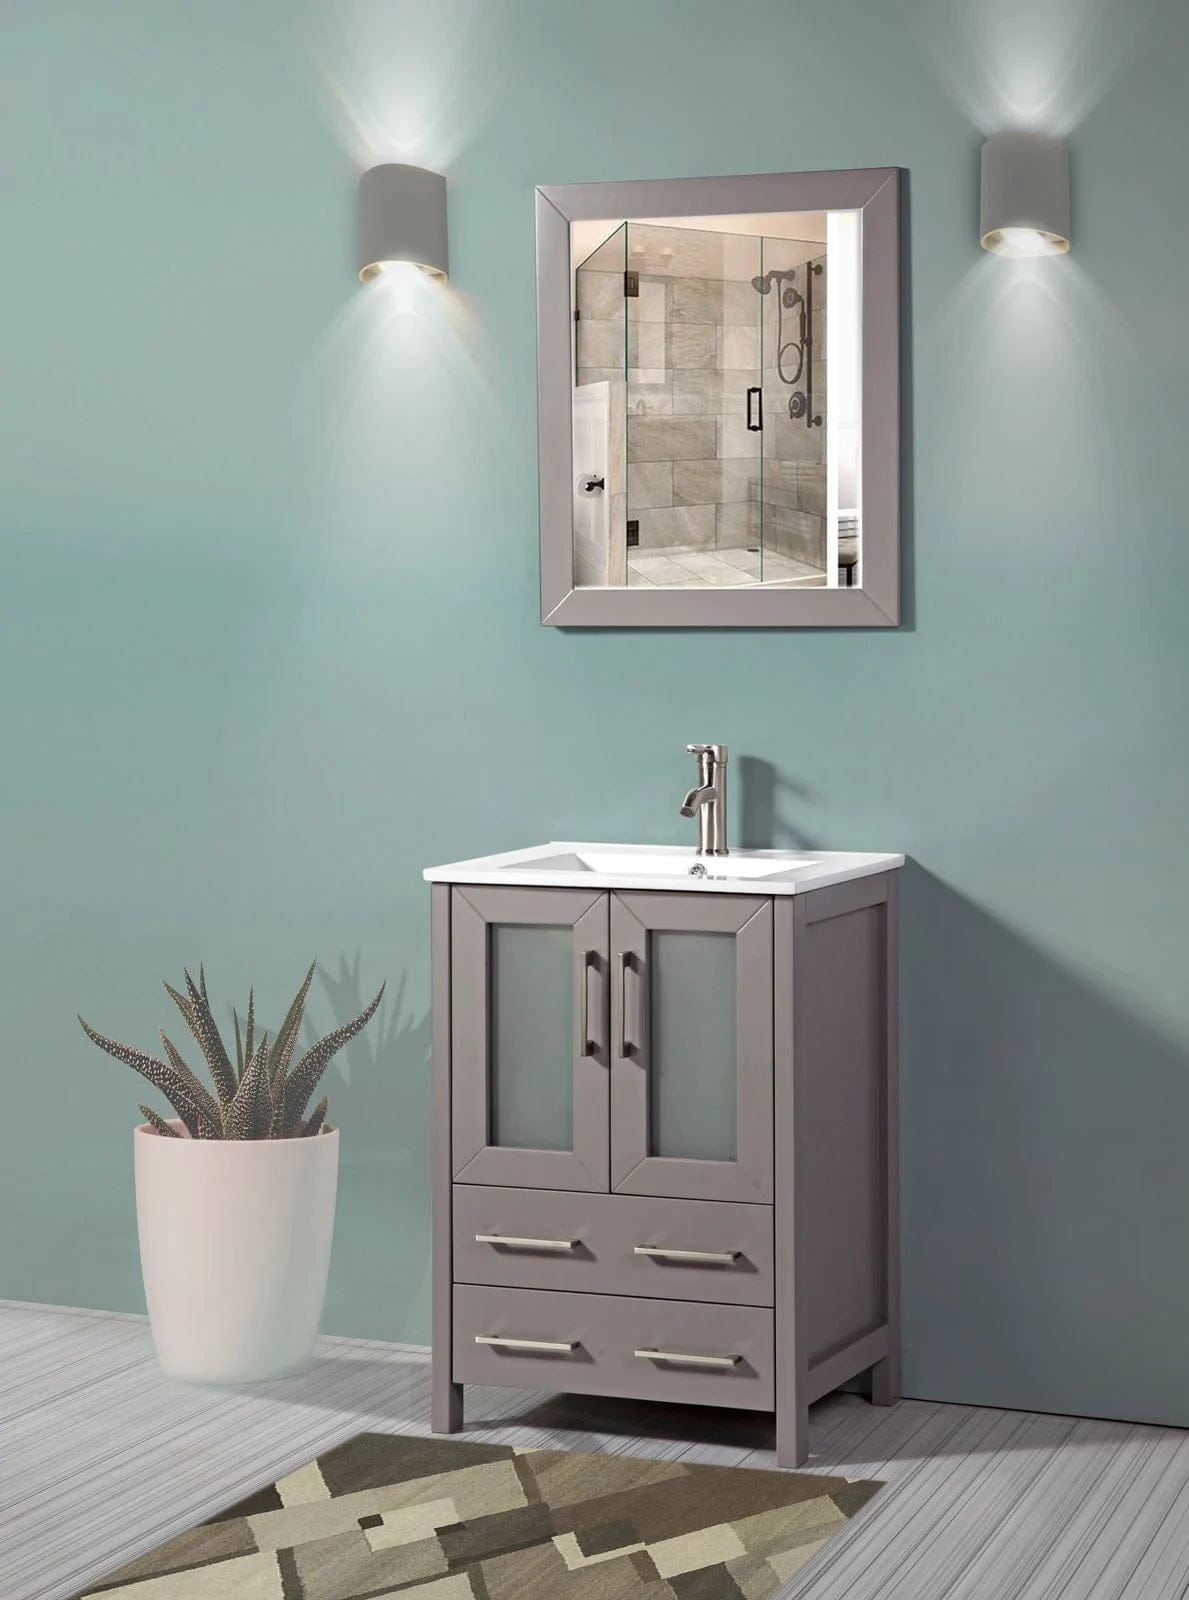 24 in. Single Sink Bathroom Vanity Compact Set in Gray - Decohub Home